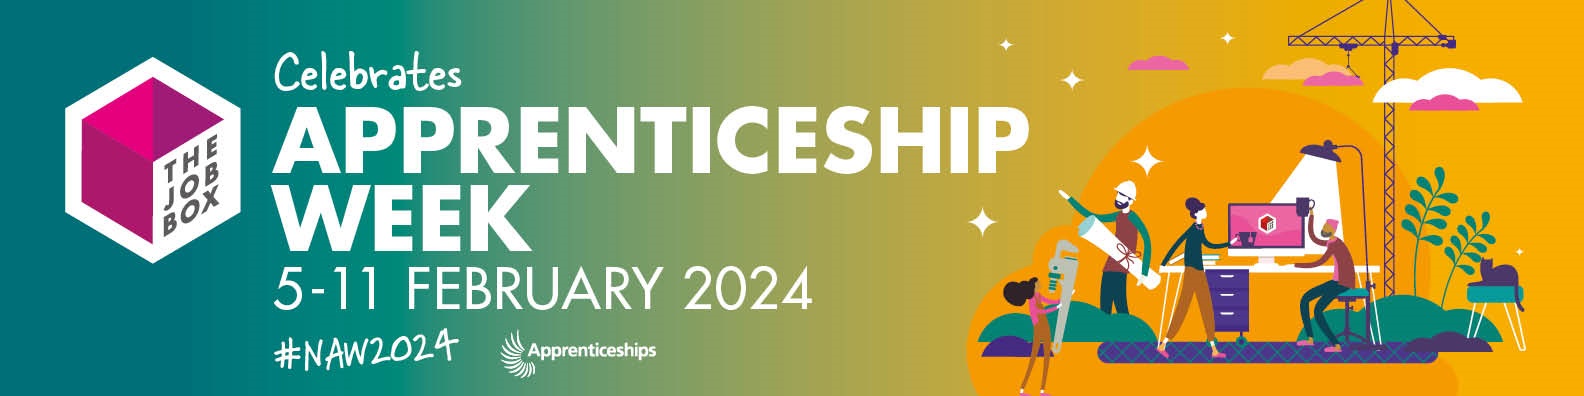 National Apprenticeship Week 2024 banner